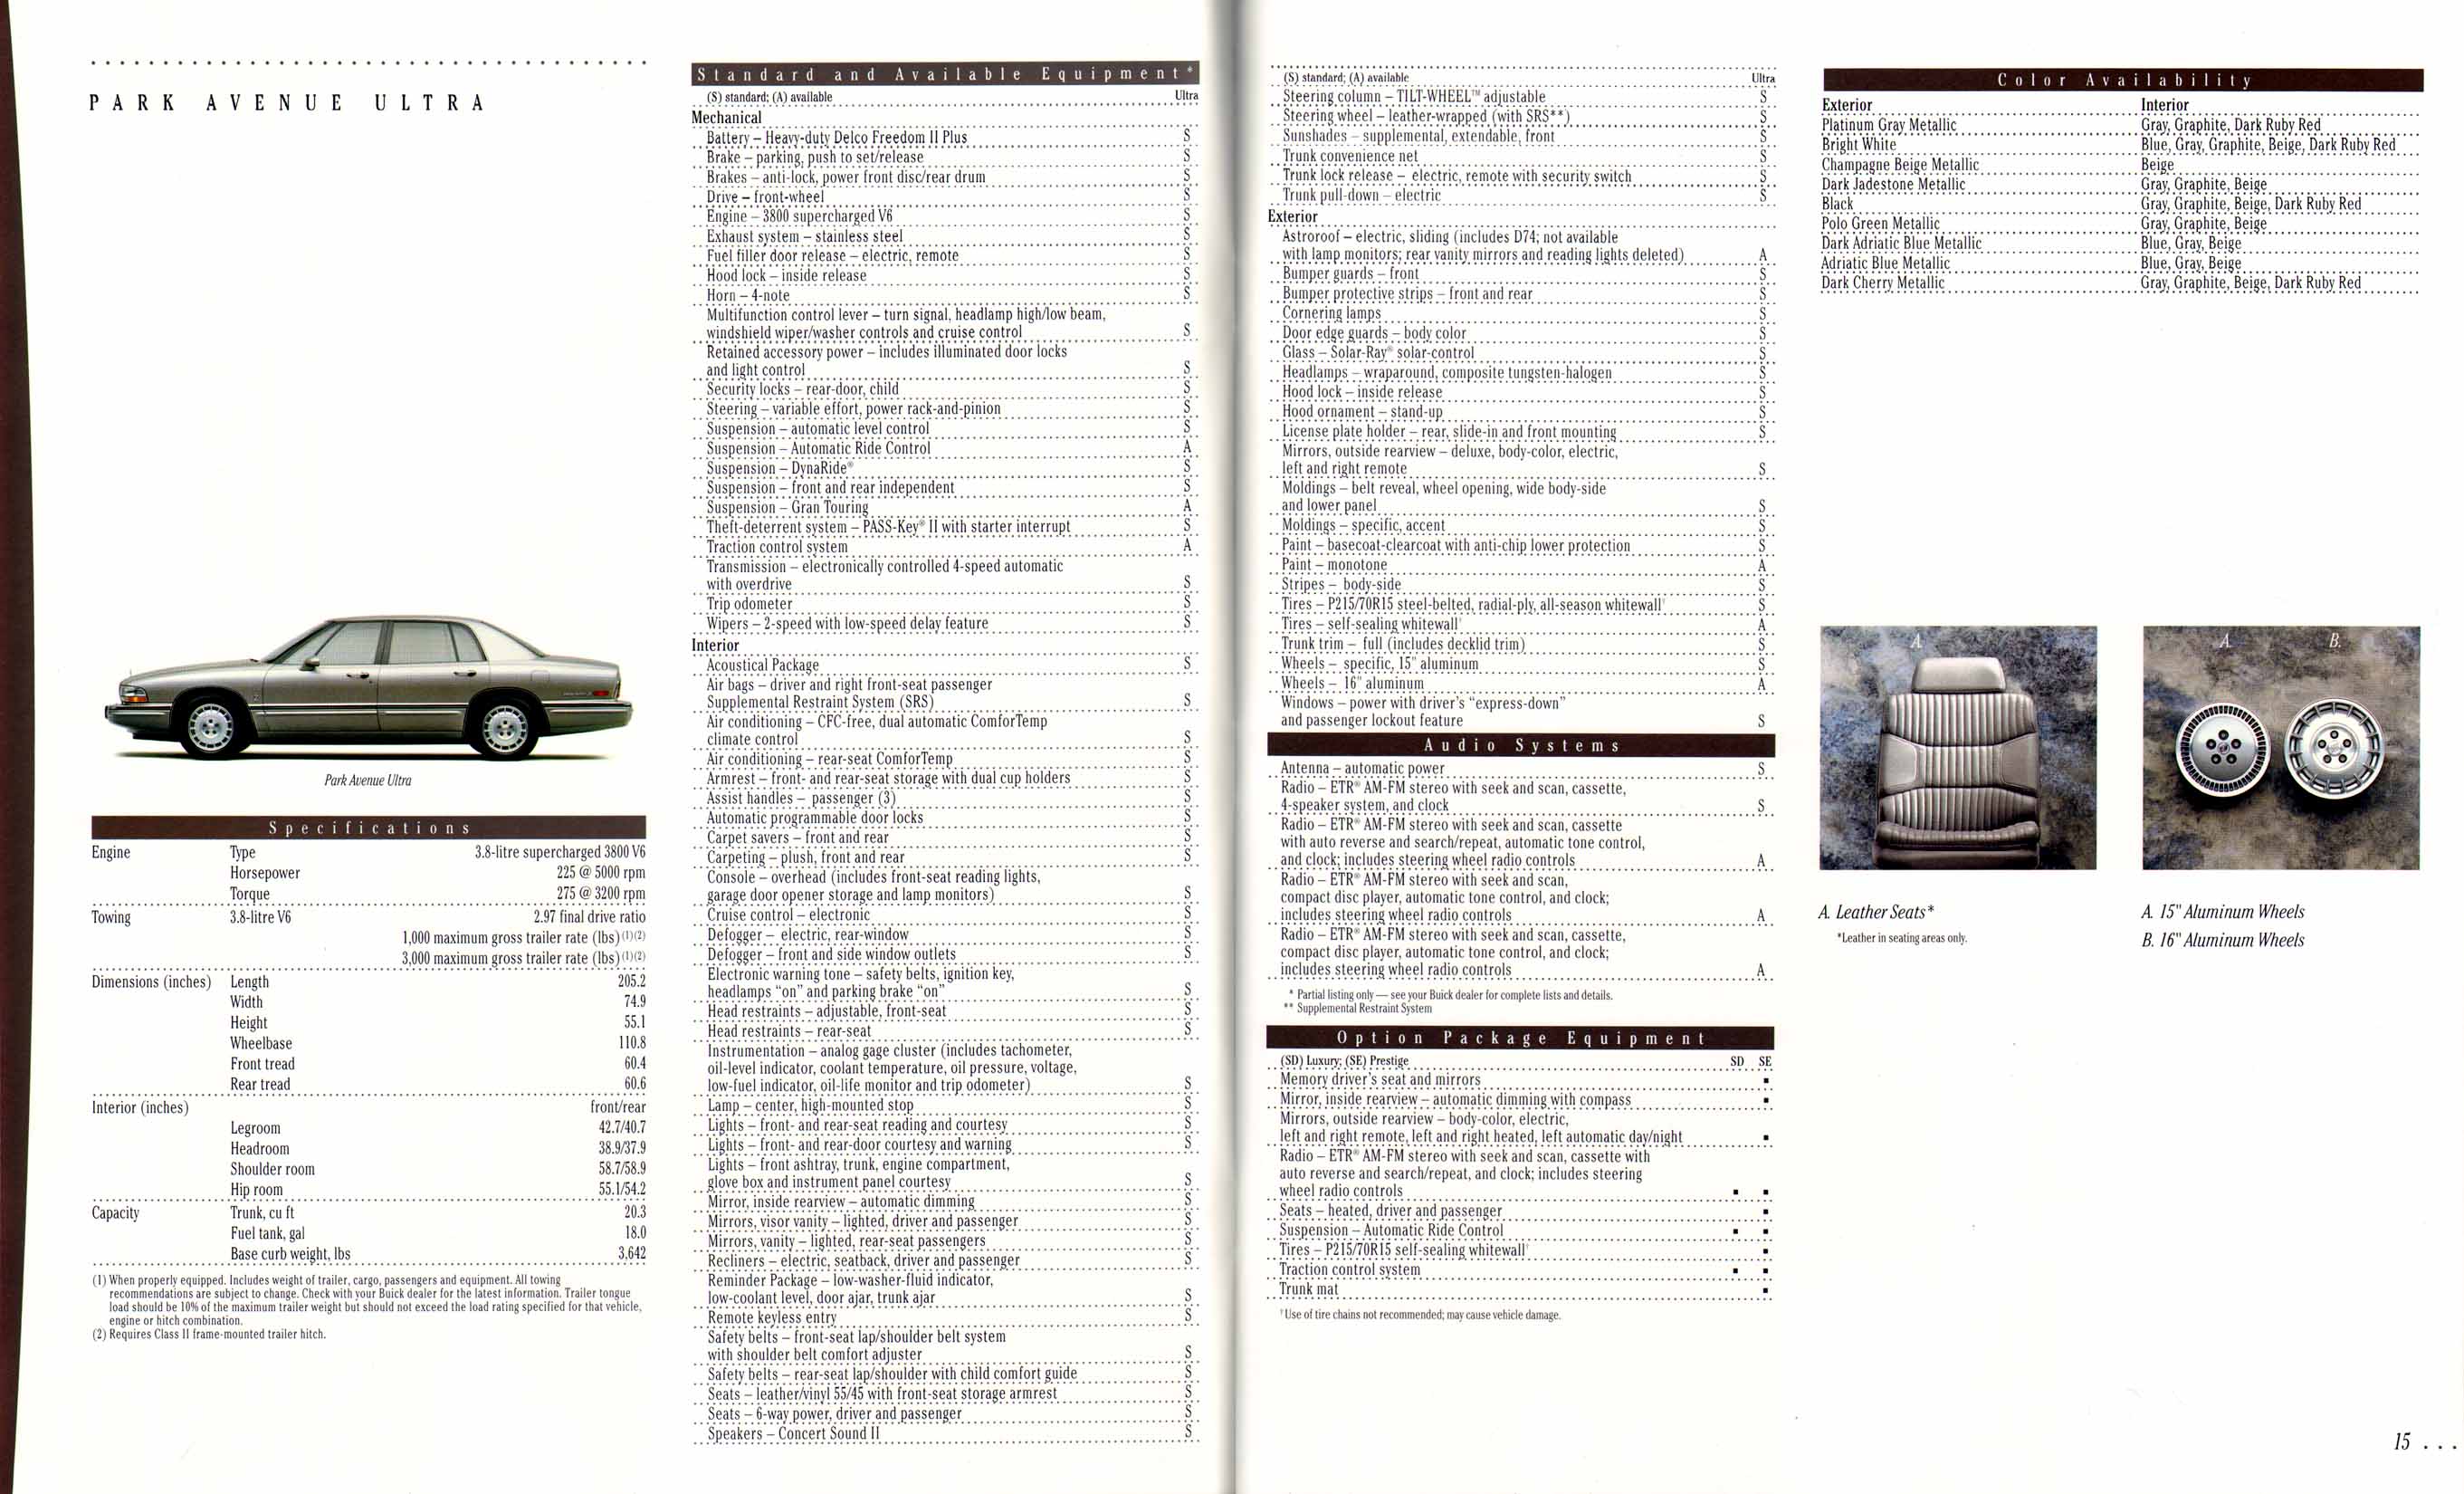 1995 Buick Full Line Prestige-14-15